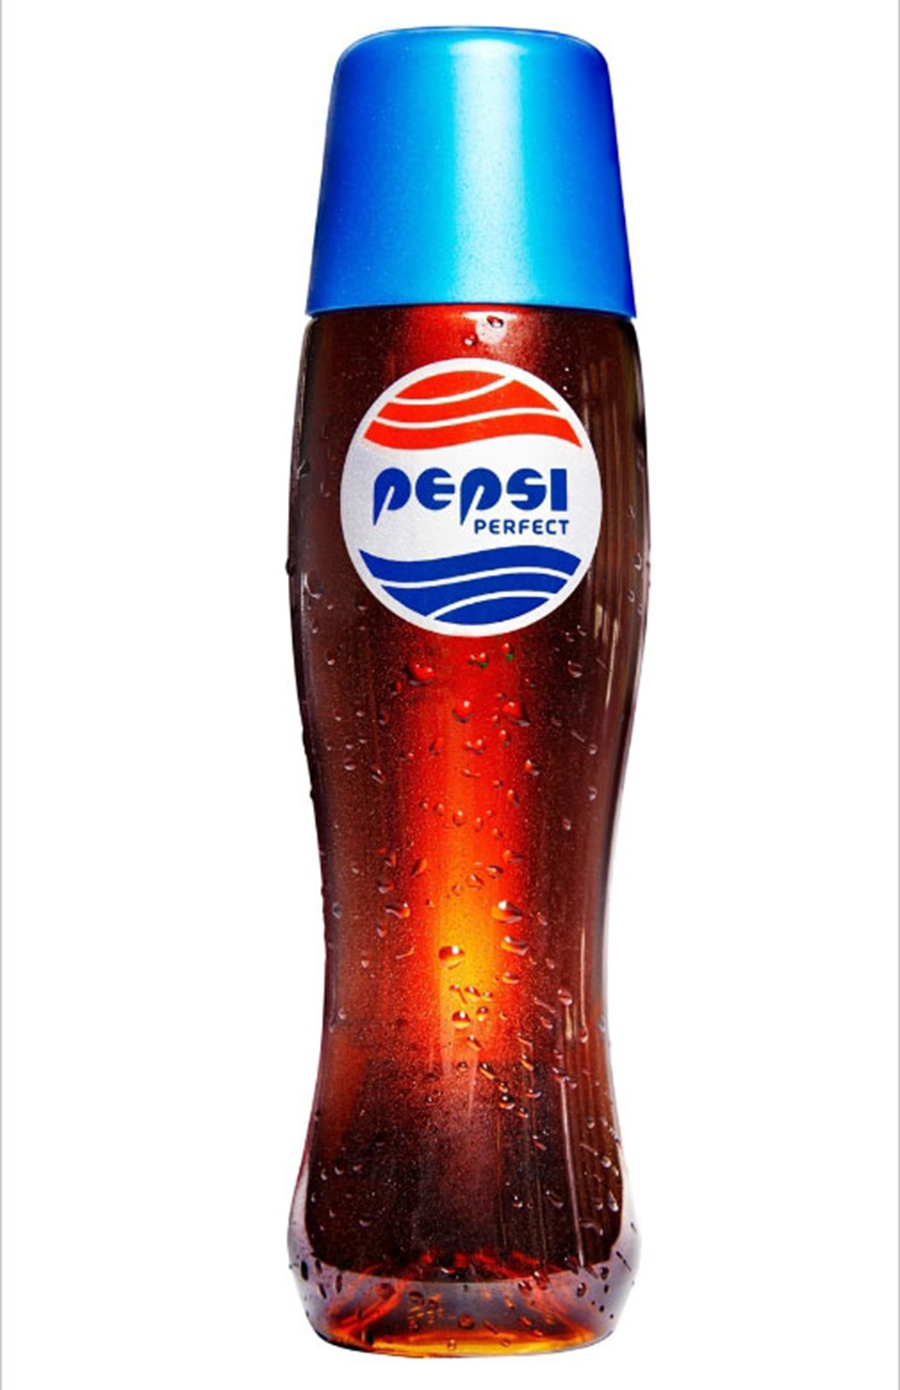 La Pepsi de 'Regreso al futuro II' ya es una realidad